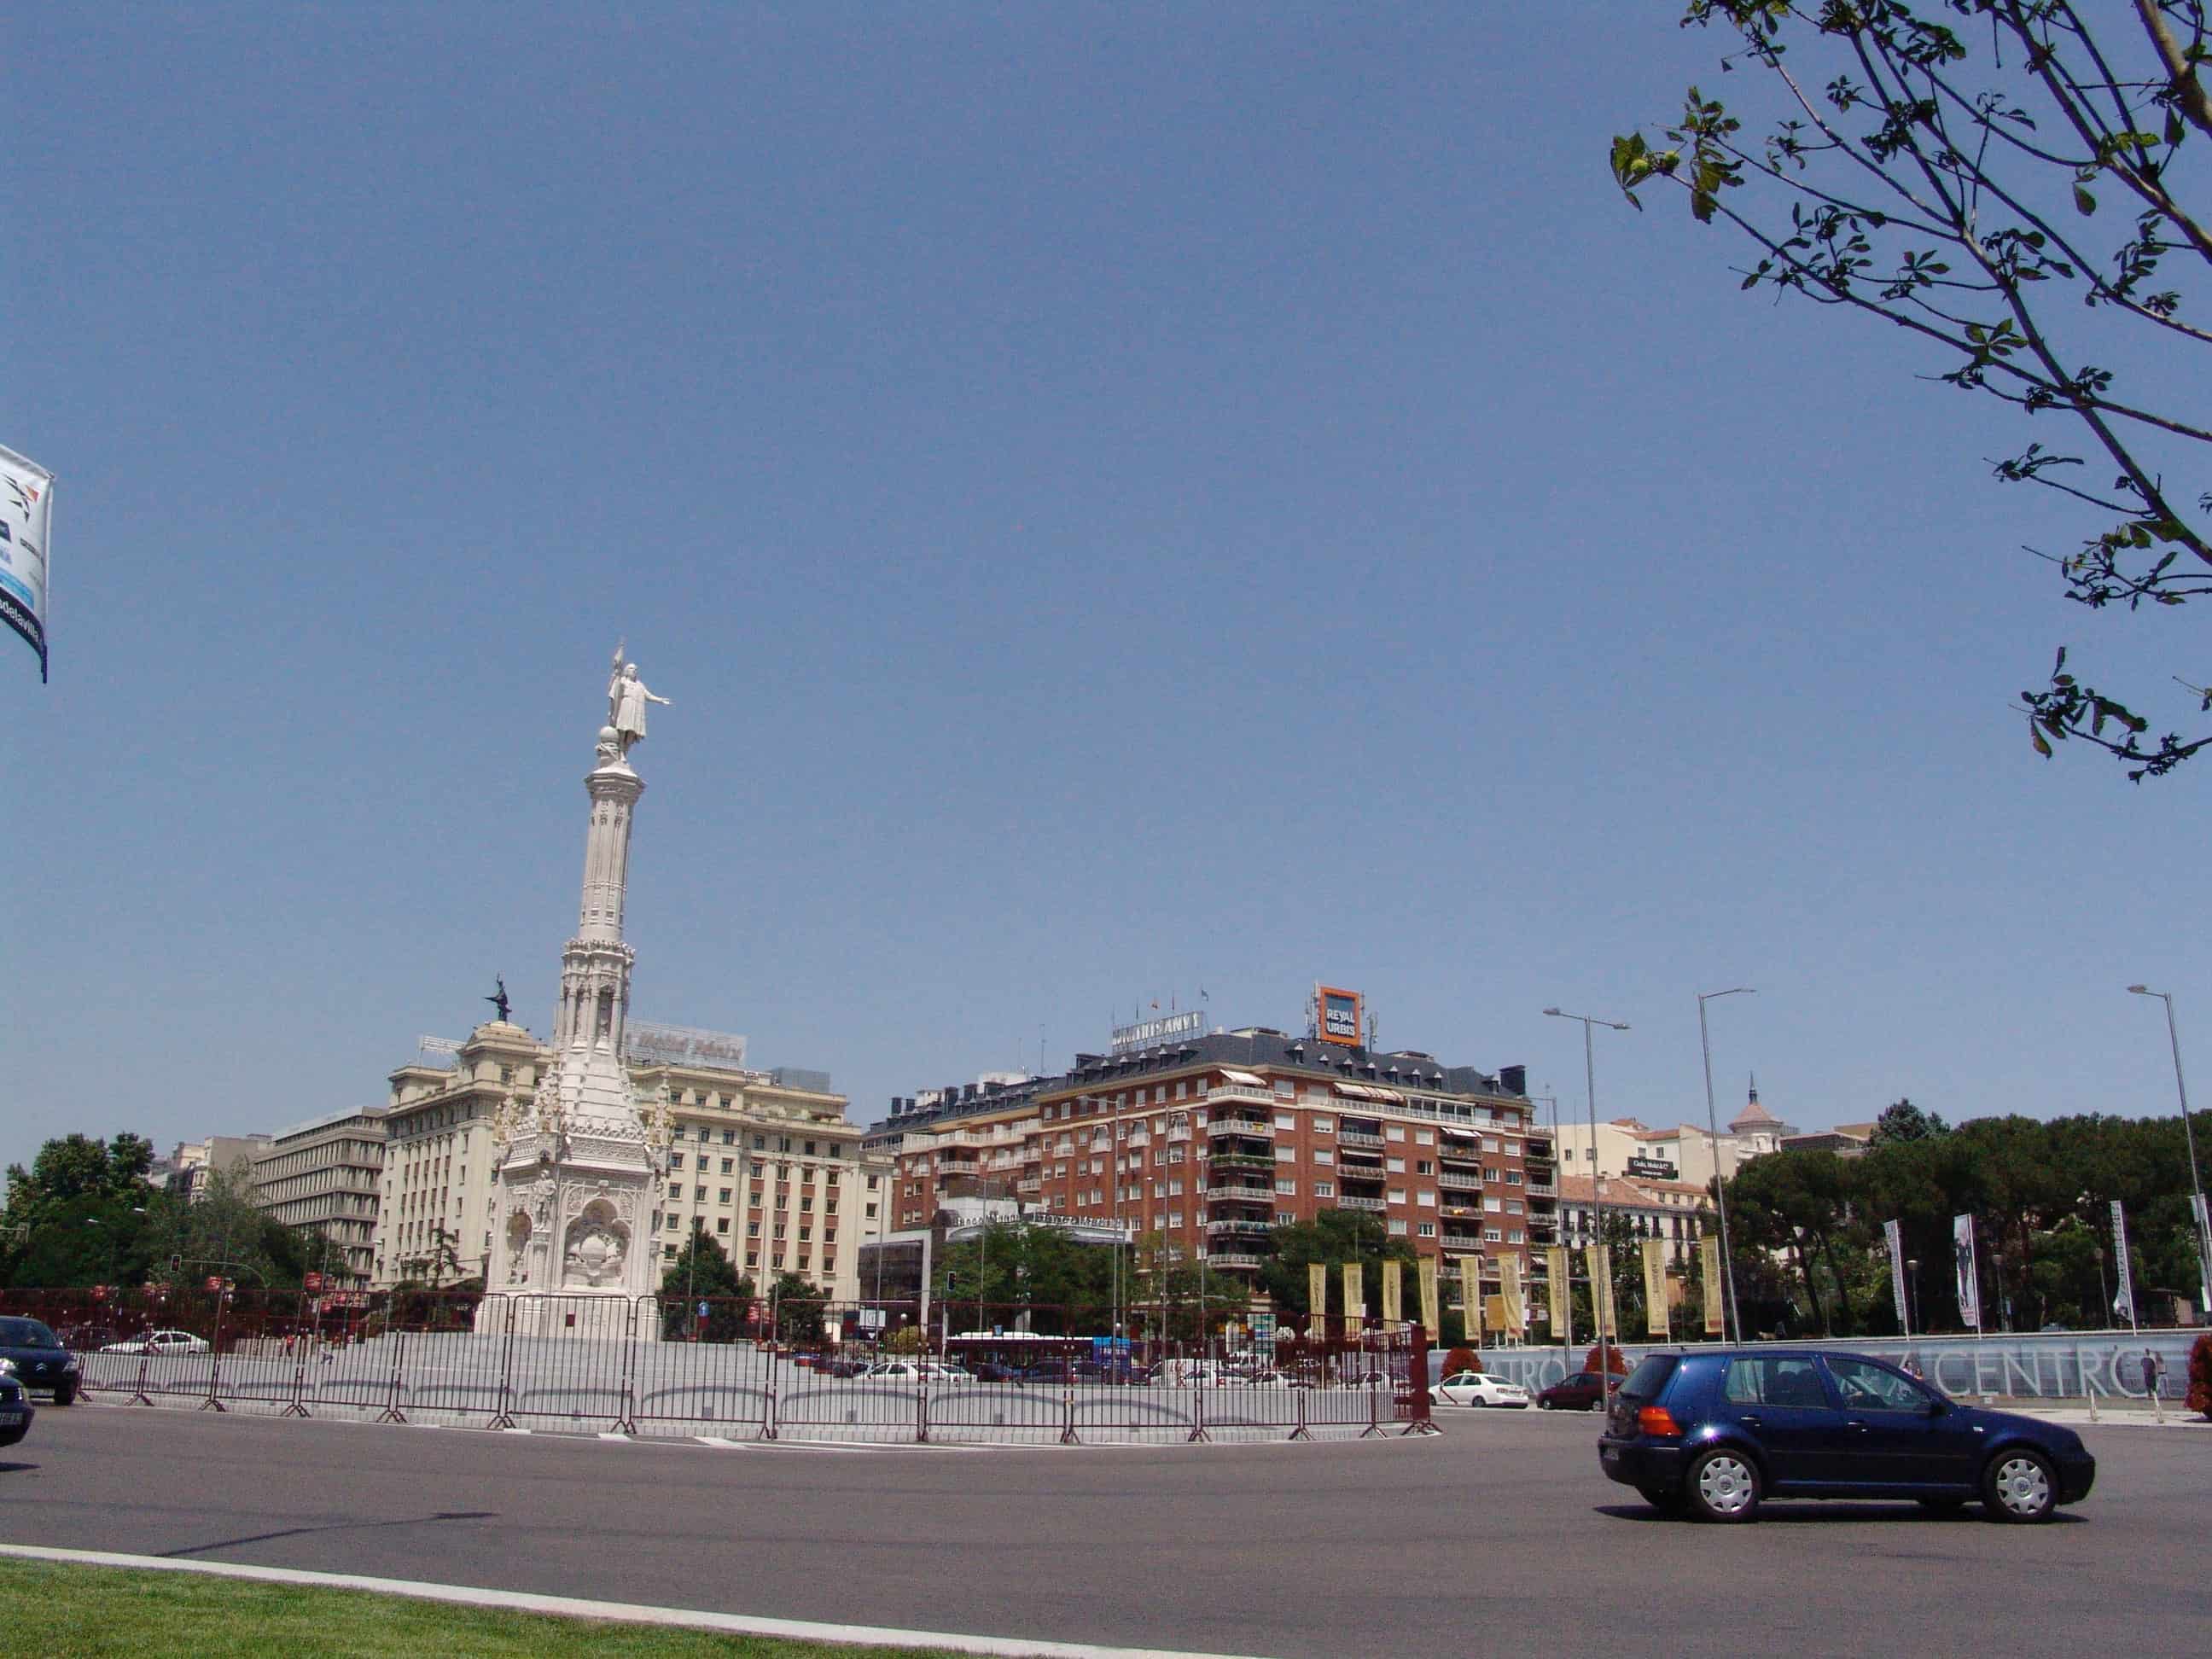 Plaza de Colón in Madrid, Spain